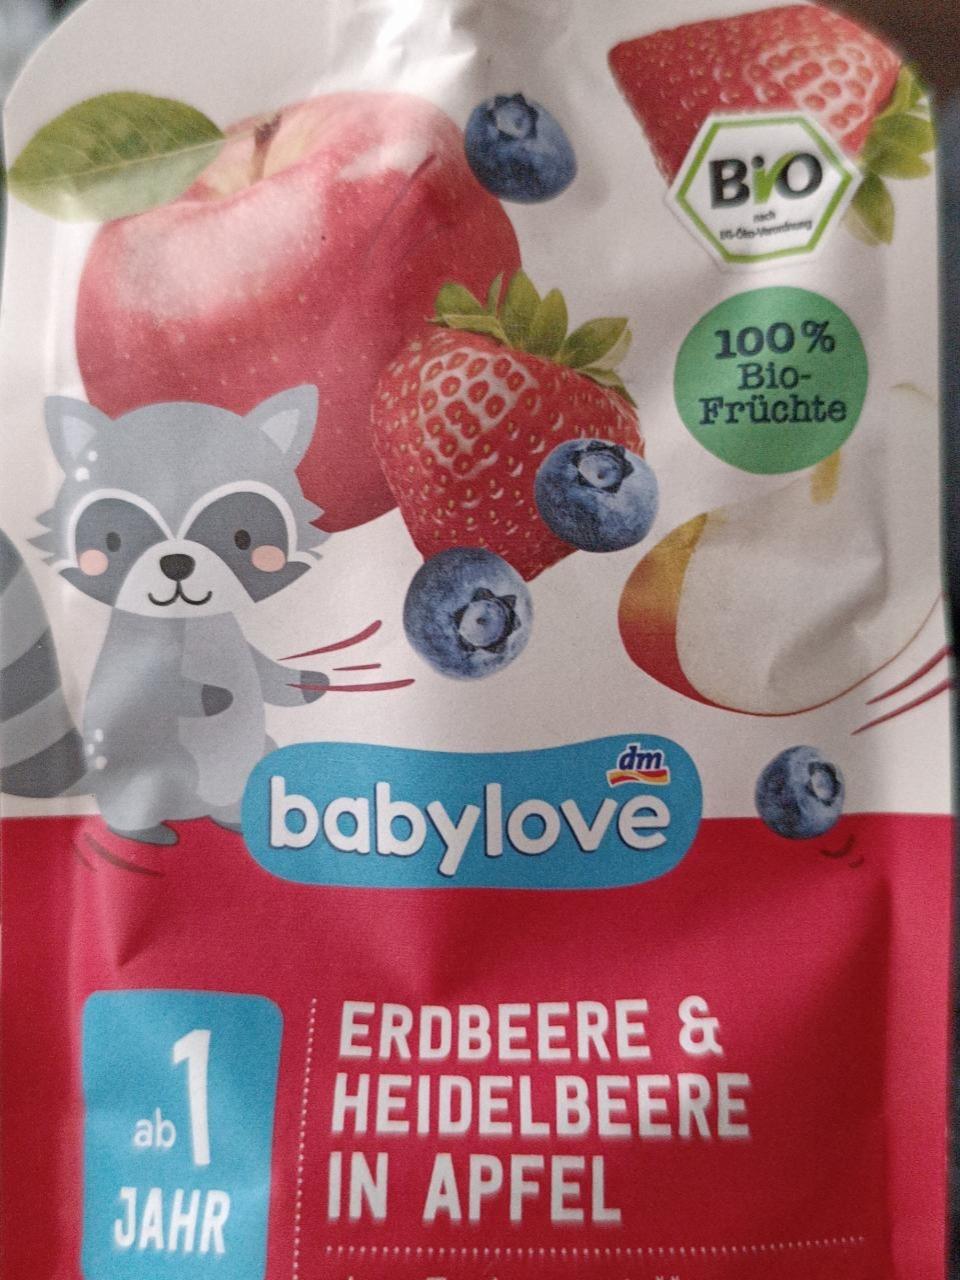 Fotografie - Erdbeere & heidelbeere in apfel Babylove